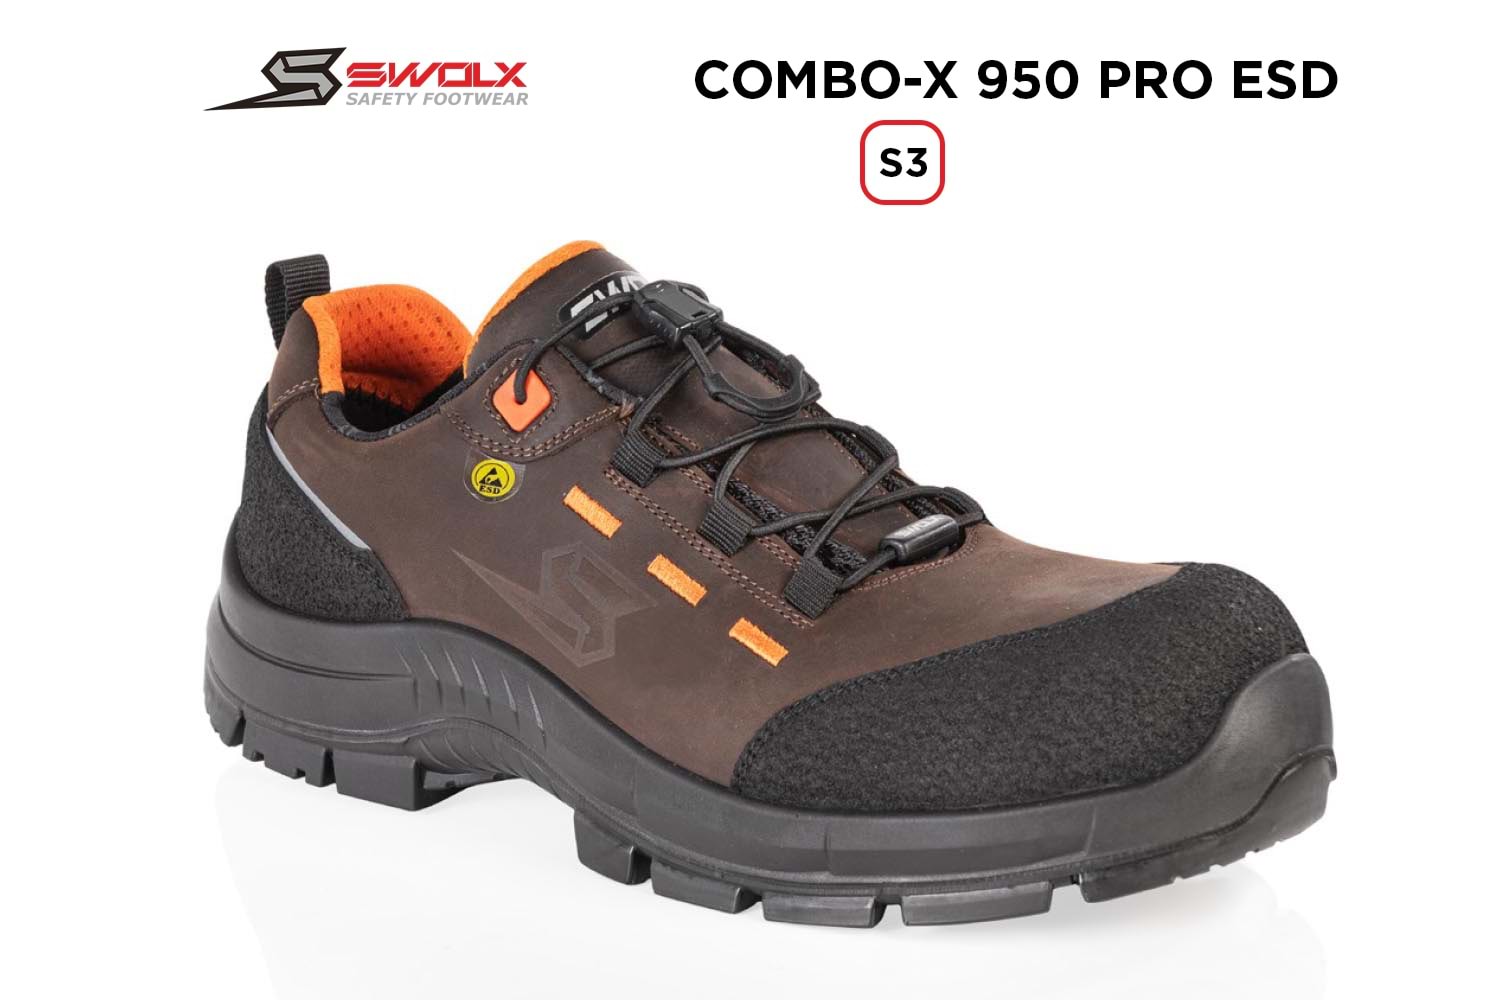 Swolx İş Ayakkabısı - Combo-X Pro Esd 950 S3 - 37